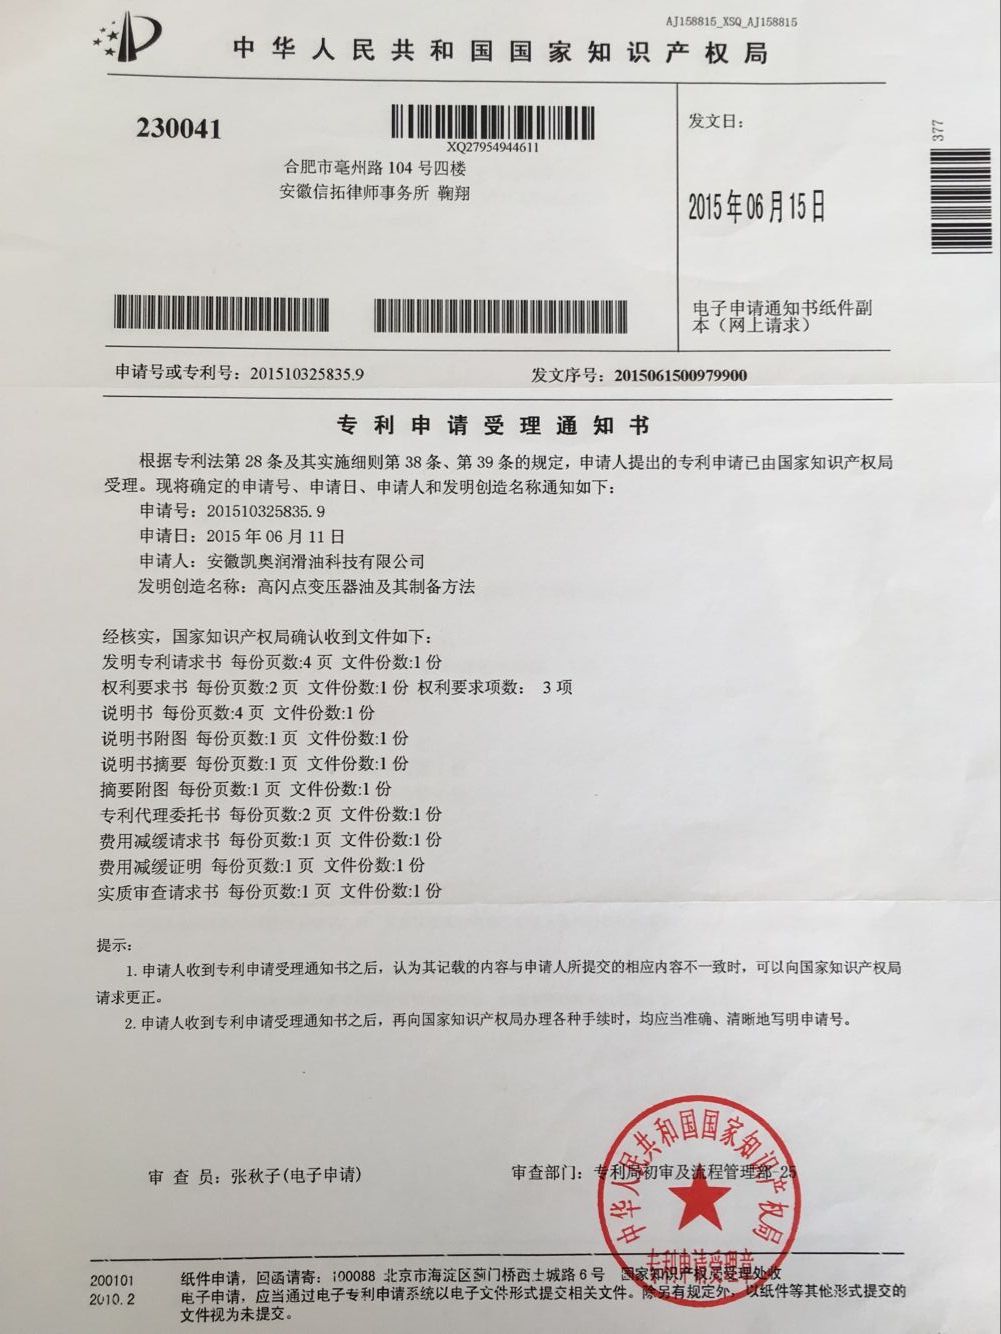 凯奥变压器油专利申请受理通知201510325835.9